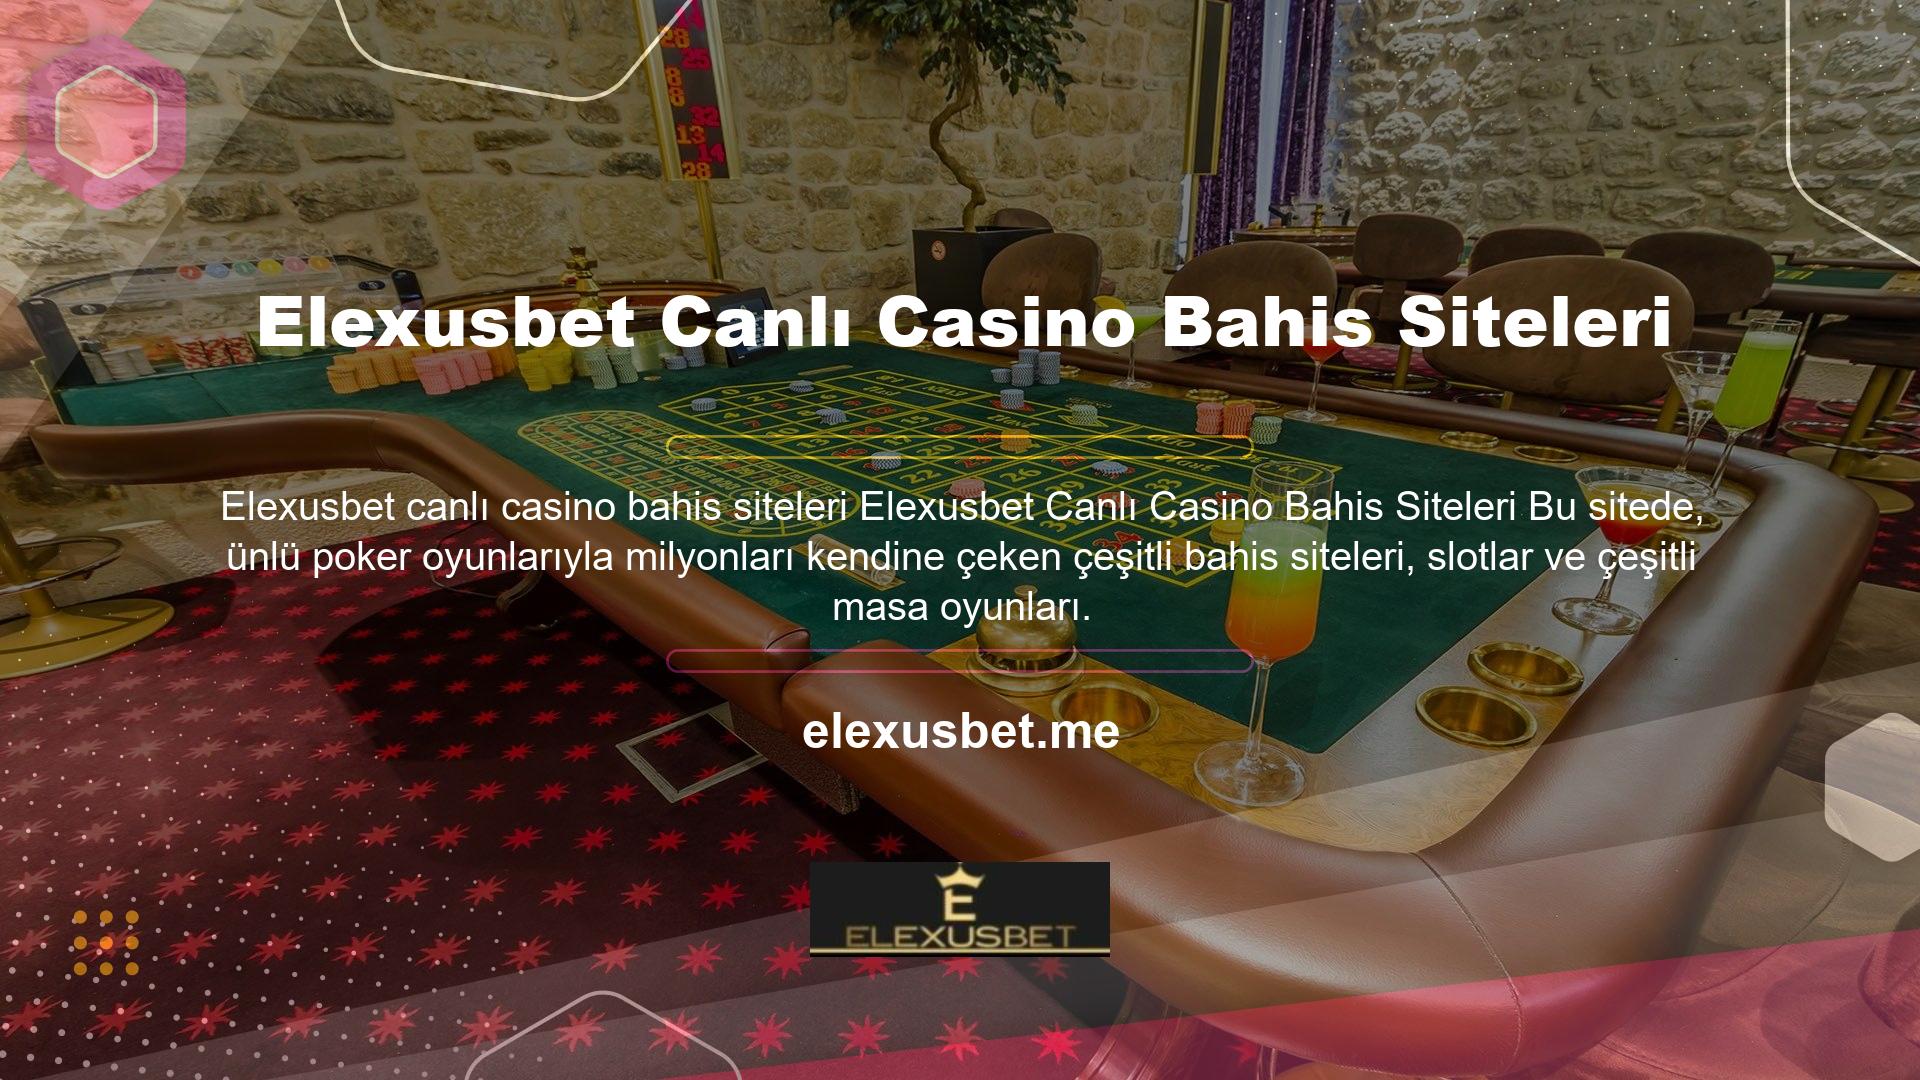 Premium hizmetler, oyunlarda şansınızı denemenizi ve canlı casino lobisinde gerçek casino atmosferini yaşamanızı sağlar